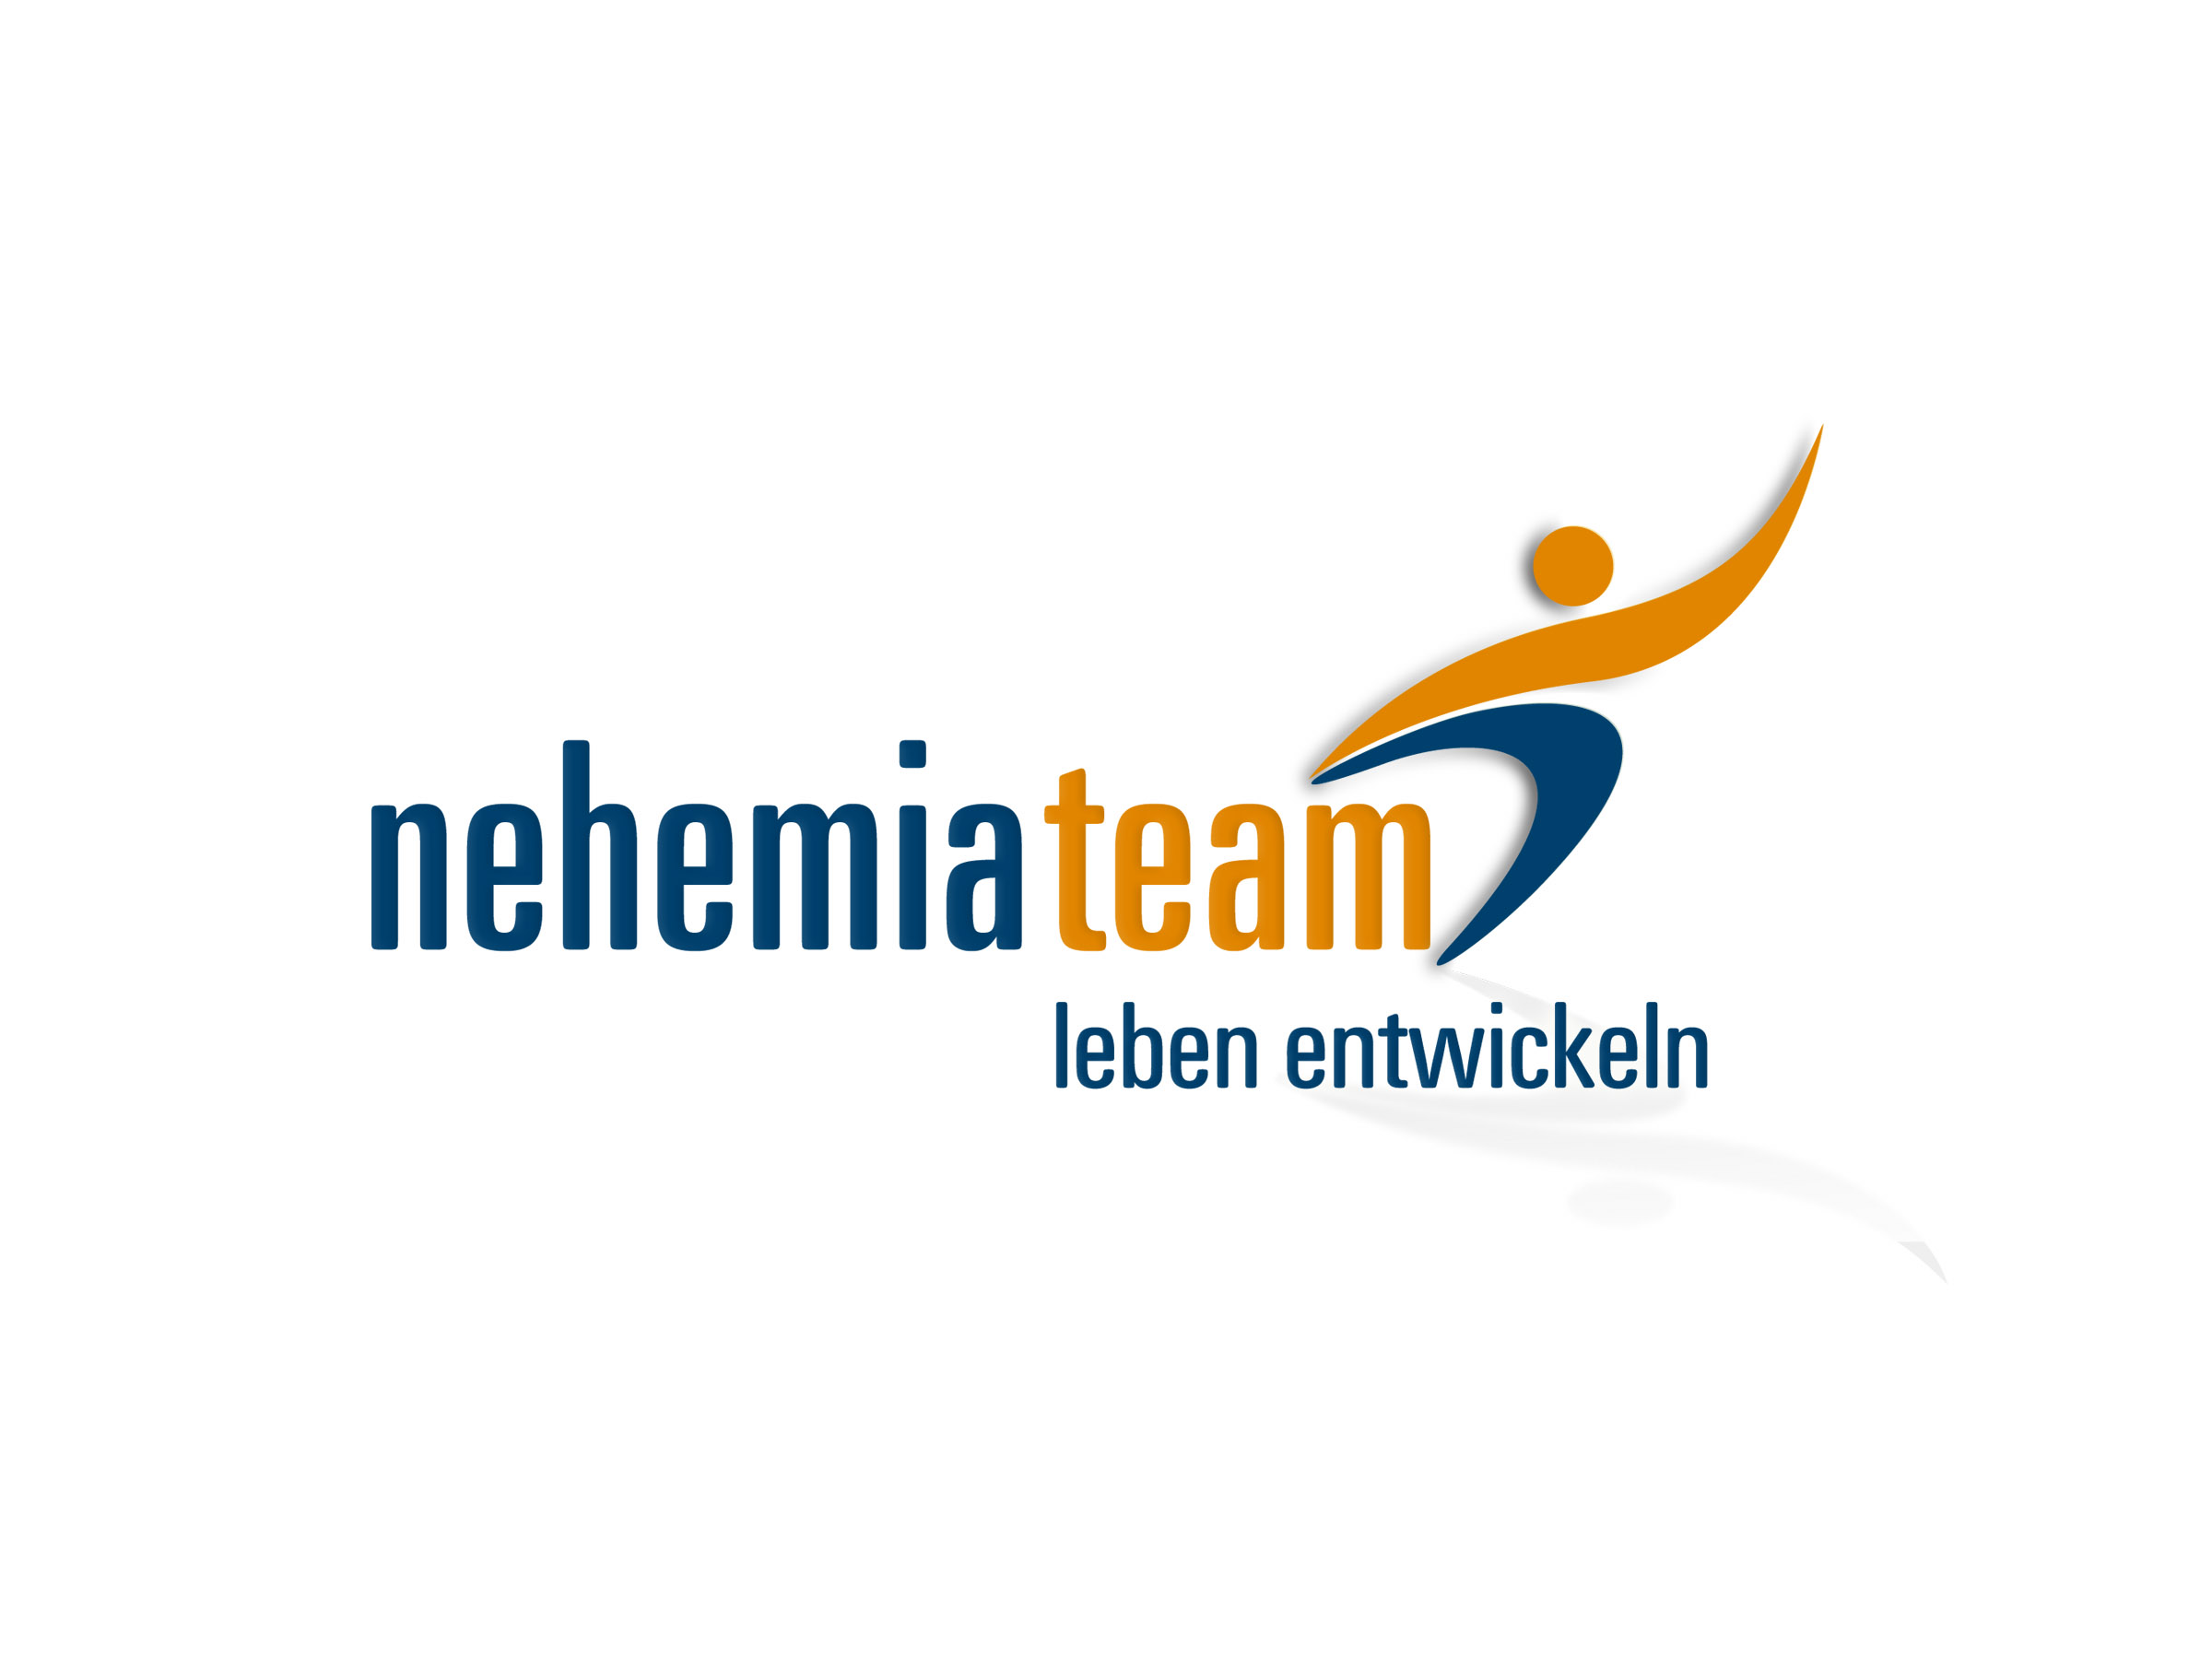 Logo vom nehemia team. Nehemia ist in blauer Schrit. Team ist in Oranger Schrit. Darunter steht noch leben entwickeln.